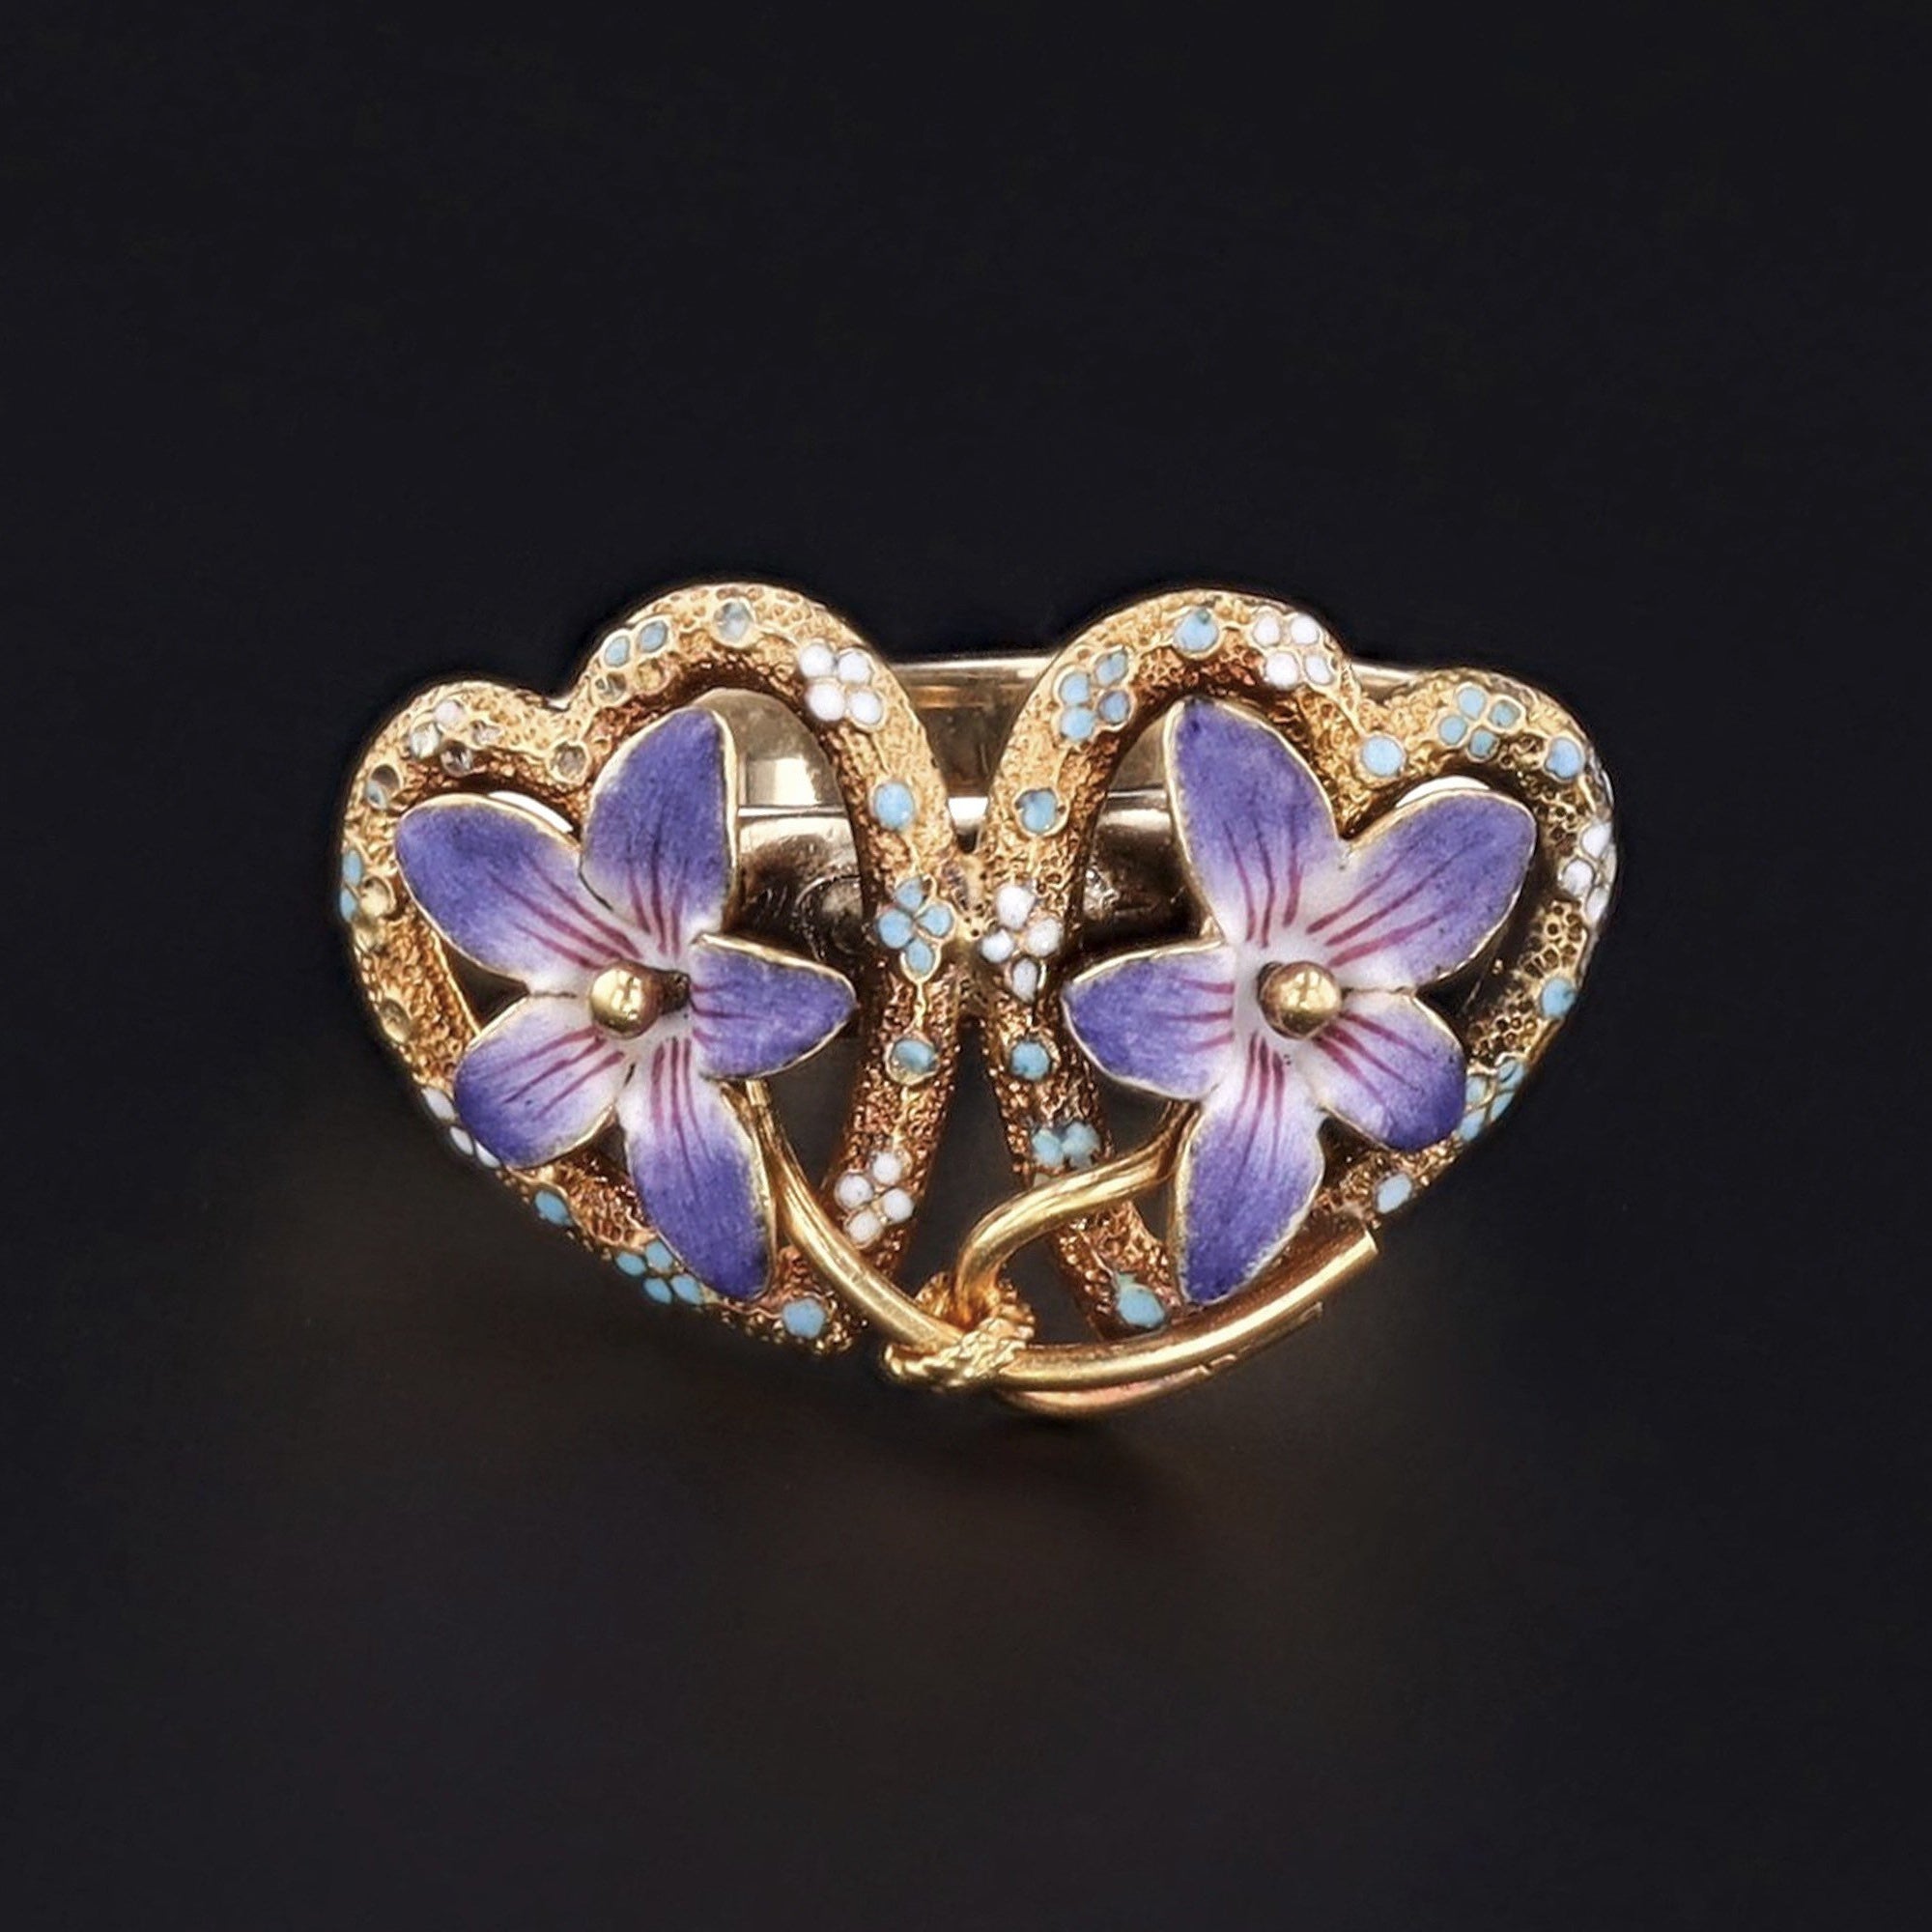 10k Gold & Enamel Violet Ring | Antique Flower Ring | Enamel Flower Ring | Antique Pin Conversion